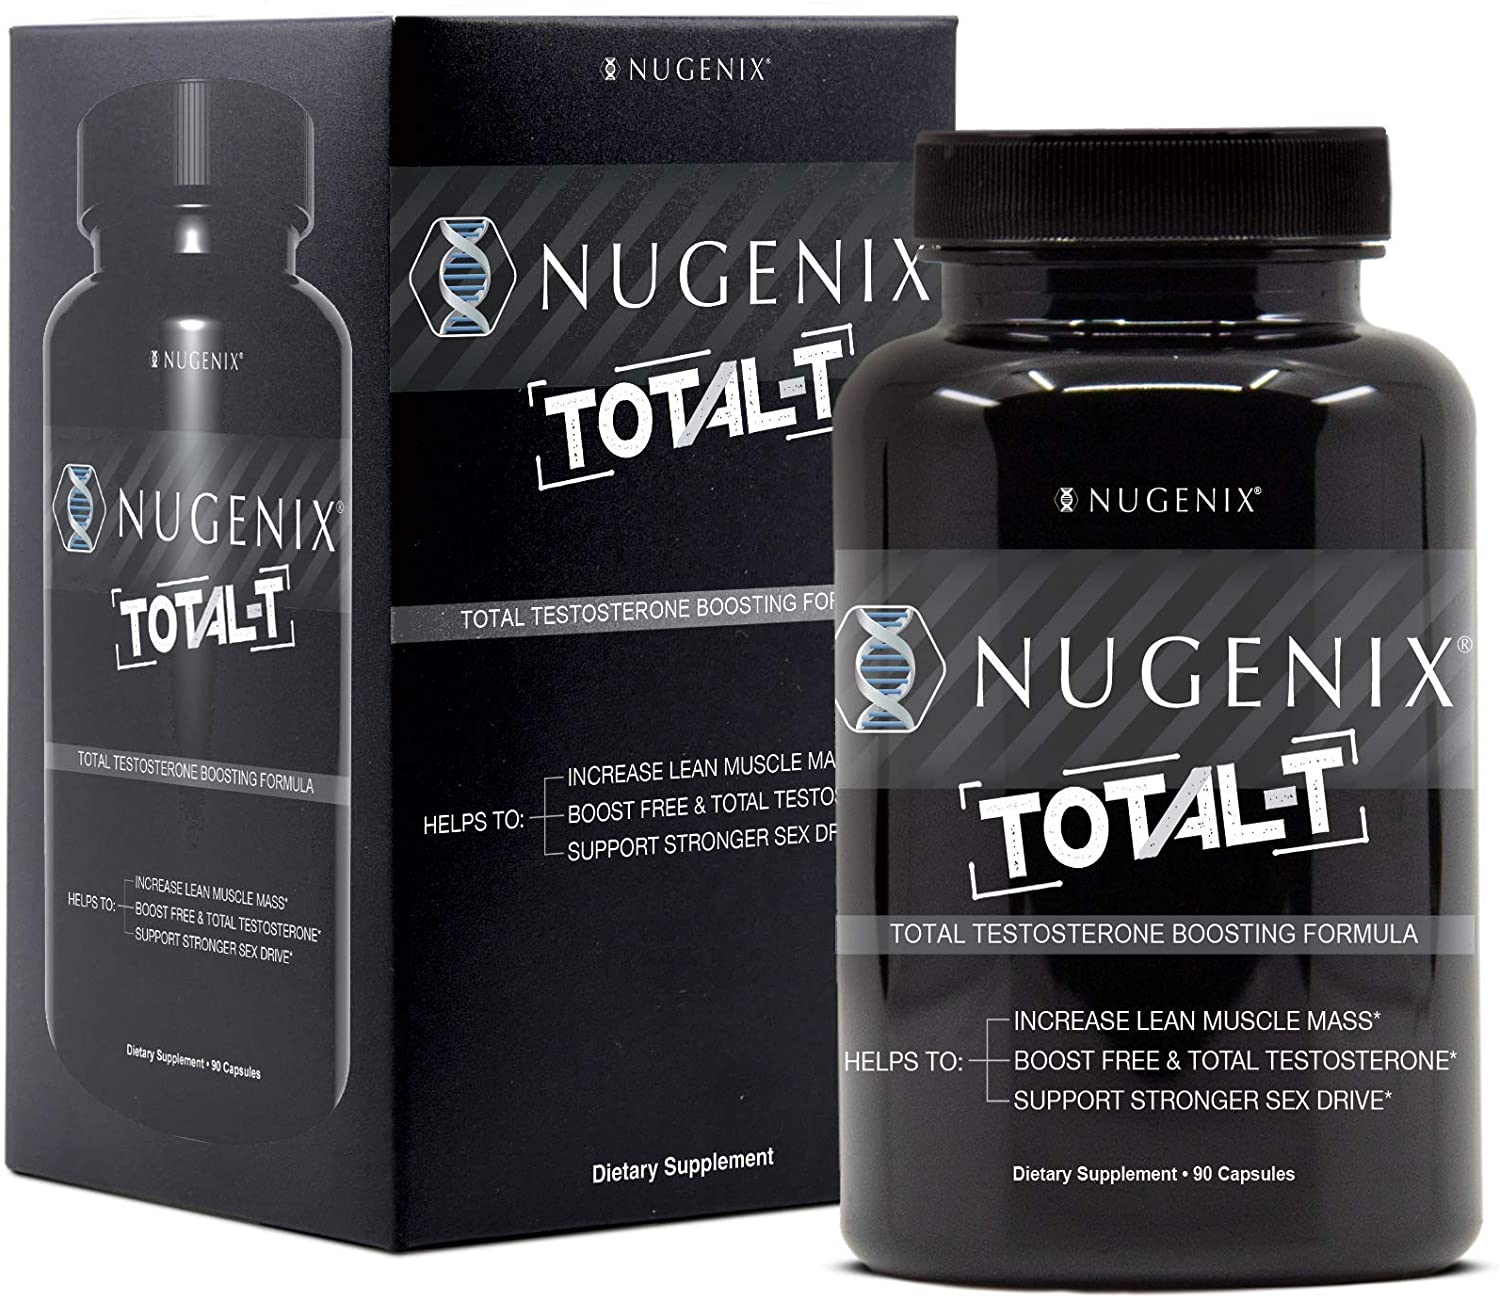 nugenix reviews, nugenix total t reviews, nugenix total t review, nugenix total t ingredients